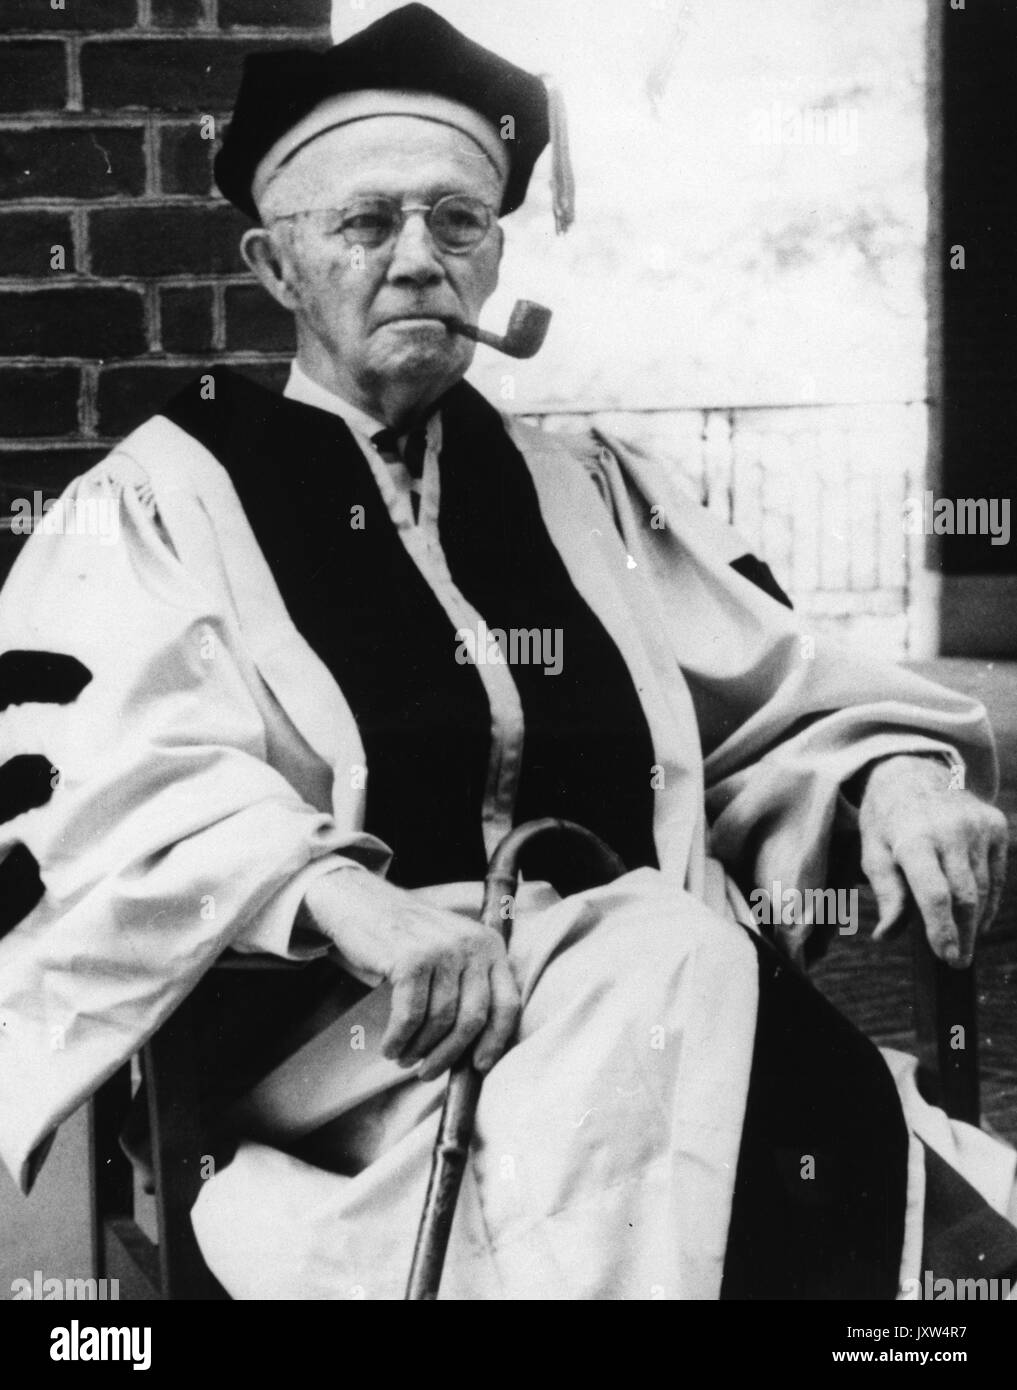 William Bennett Kouwenhoven, candid Foto, Sitzen, rauchen Pfeife, Vorbereitung der Ehrenpromotion zu erhalten, c im Alter von 80 Jahren, 1965. Stockfoto